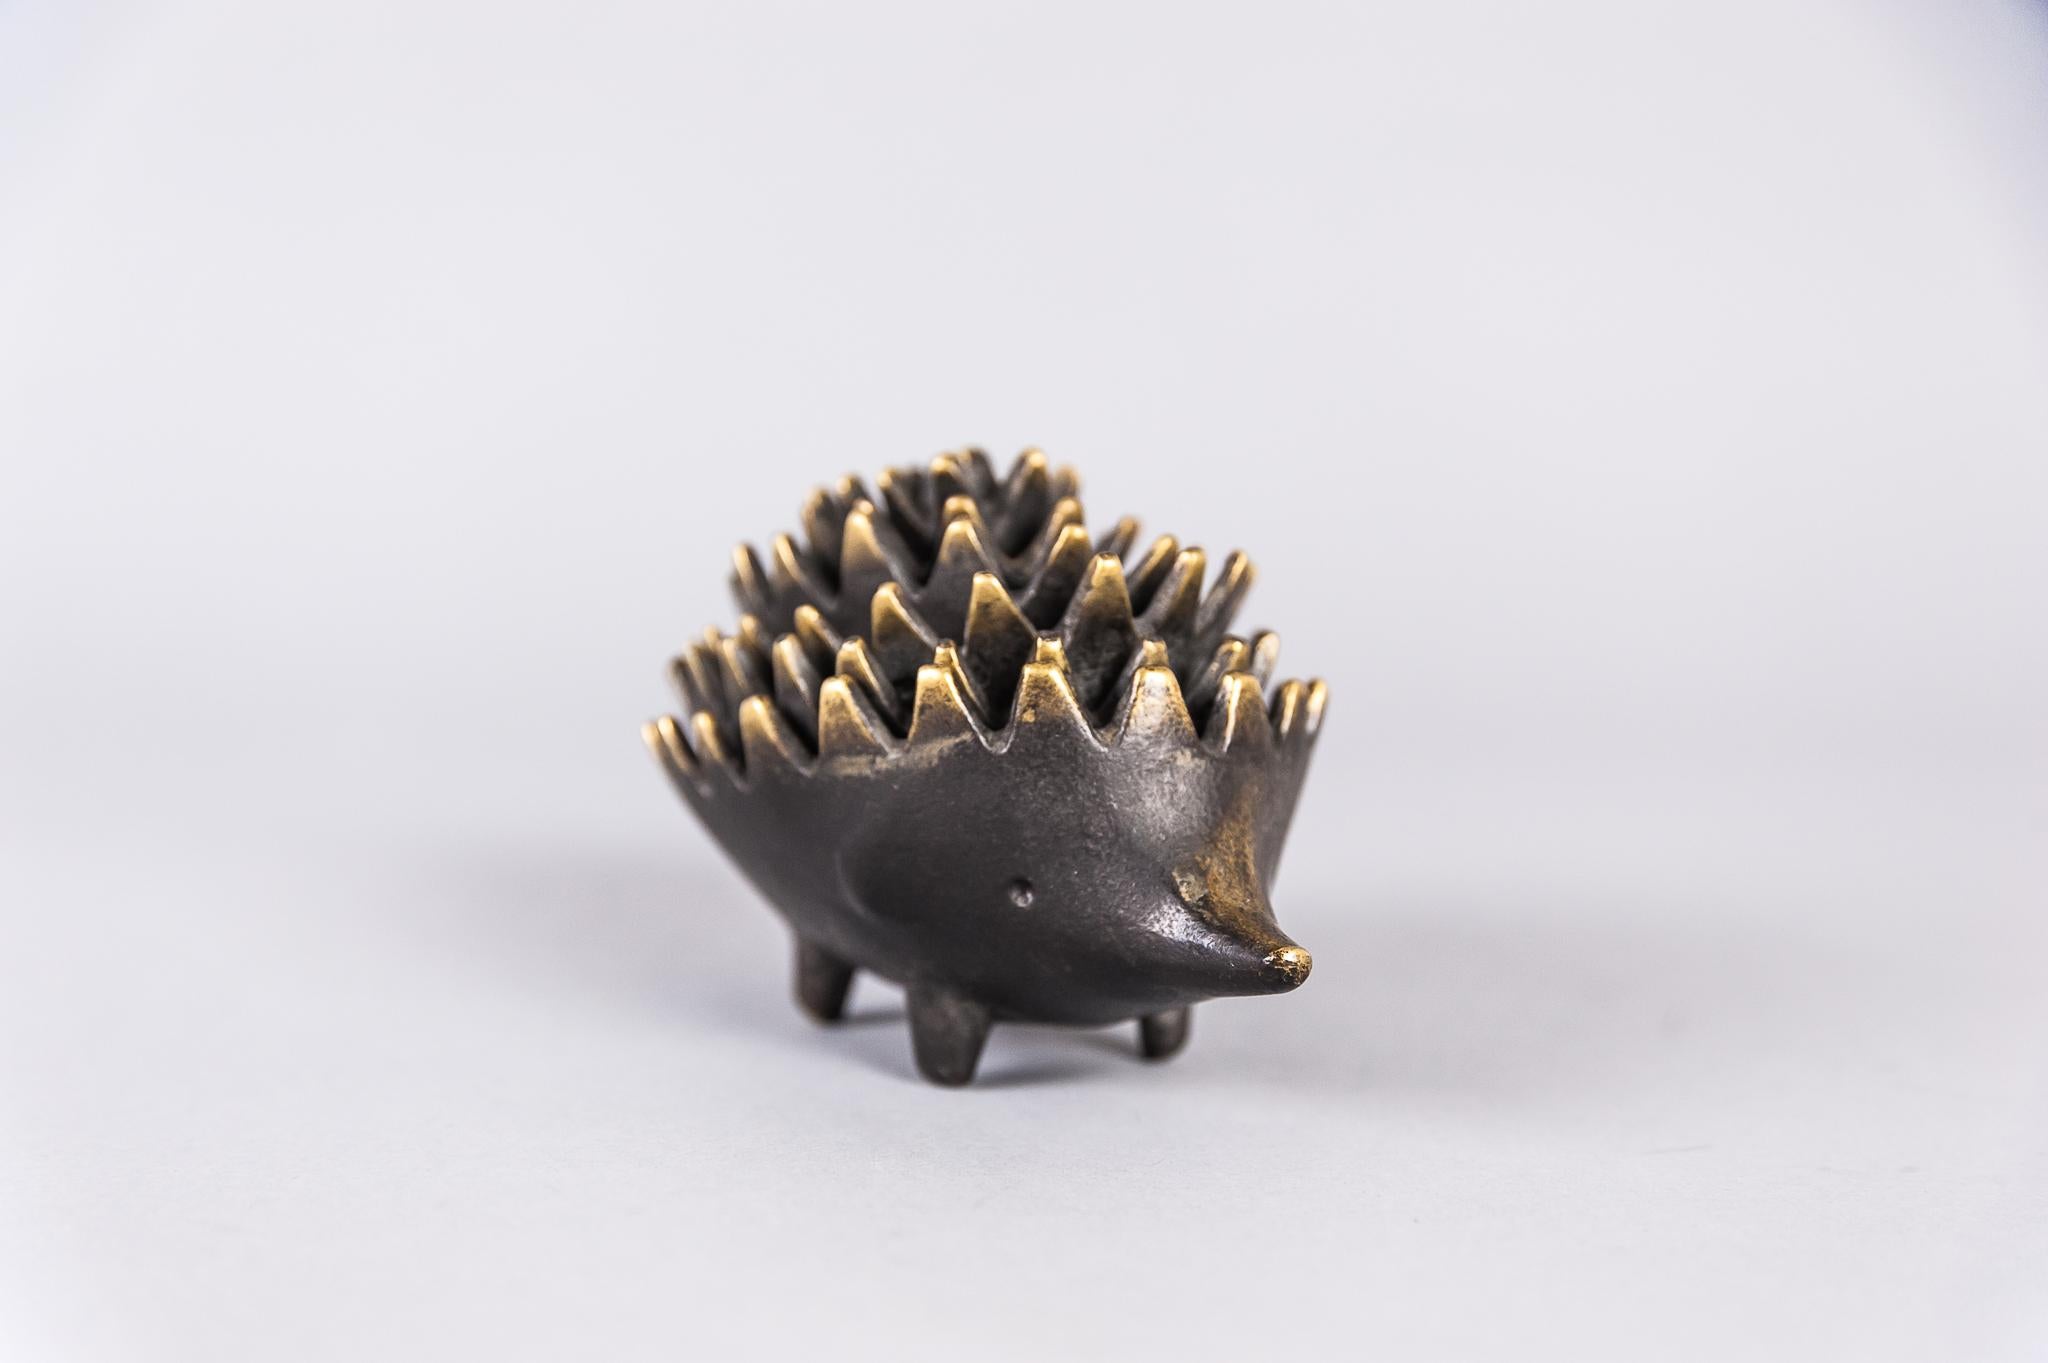 Blackened Hedgehog by Walter Bosse for Hertha Baller